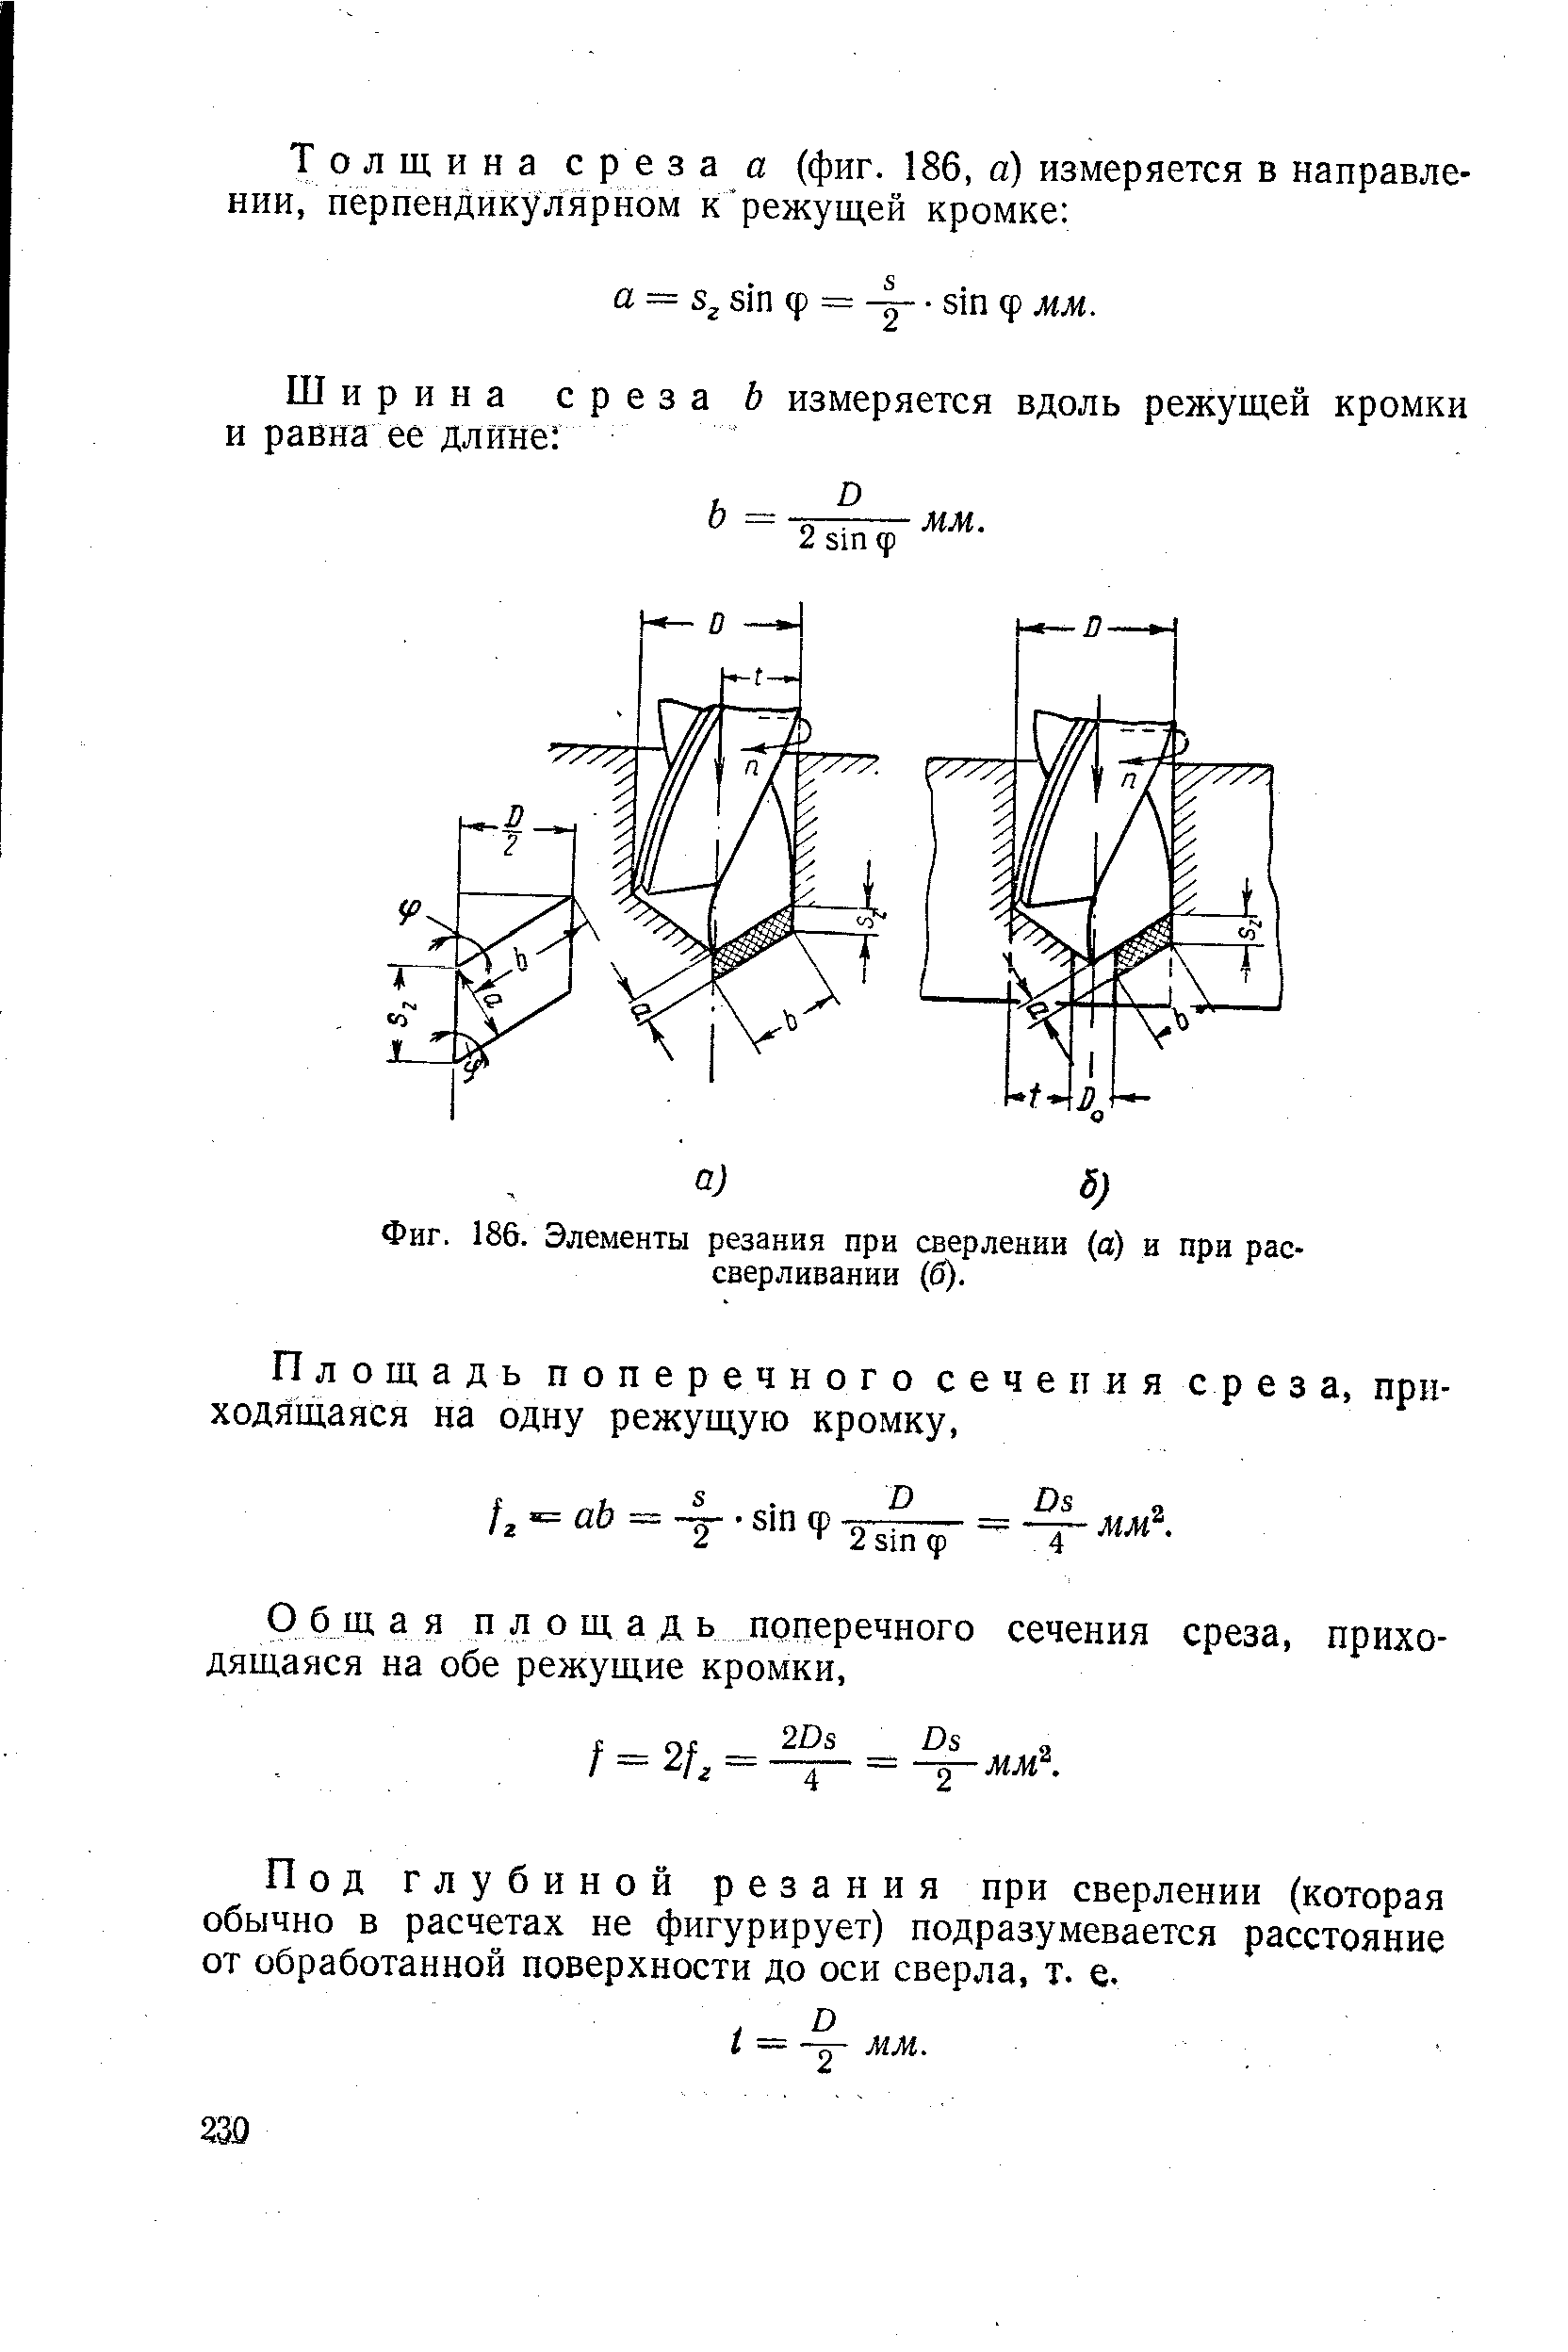 Фиг. 186. Элементы резания при сверлении (а) и при рассверливании (б).
